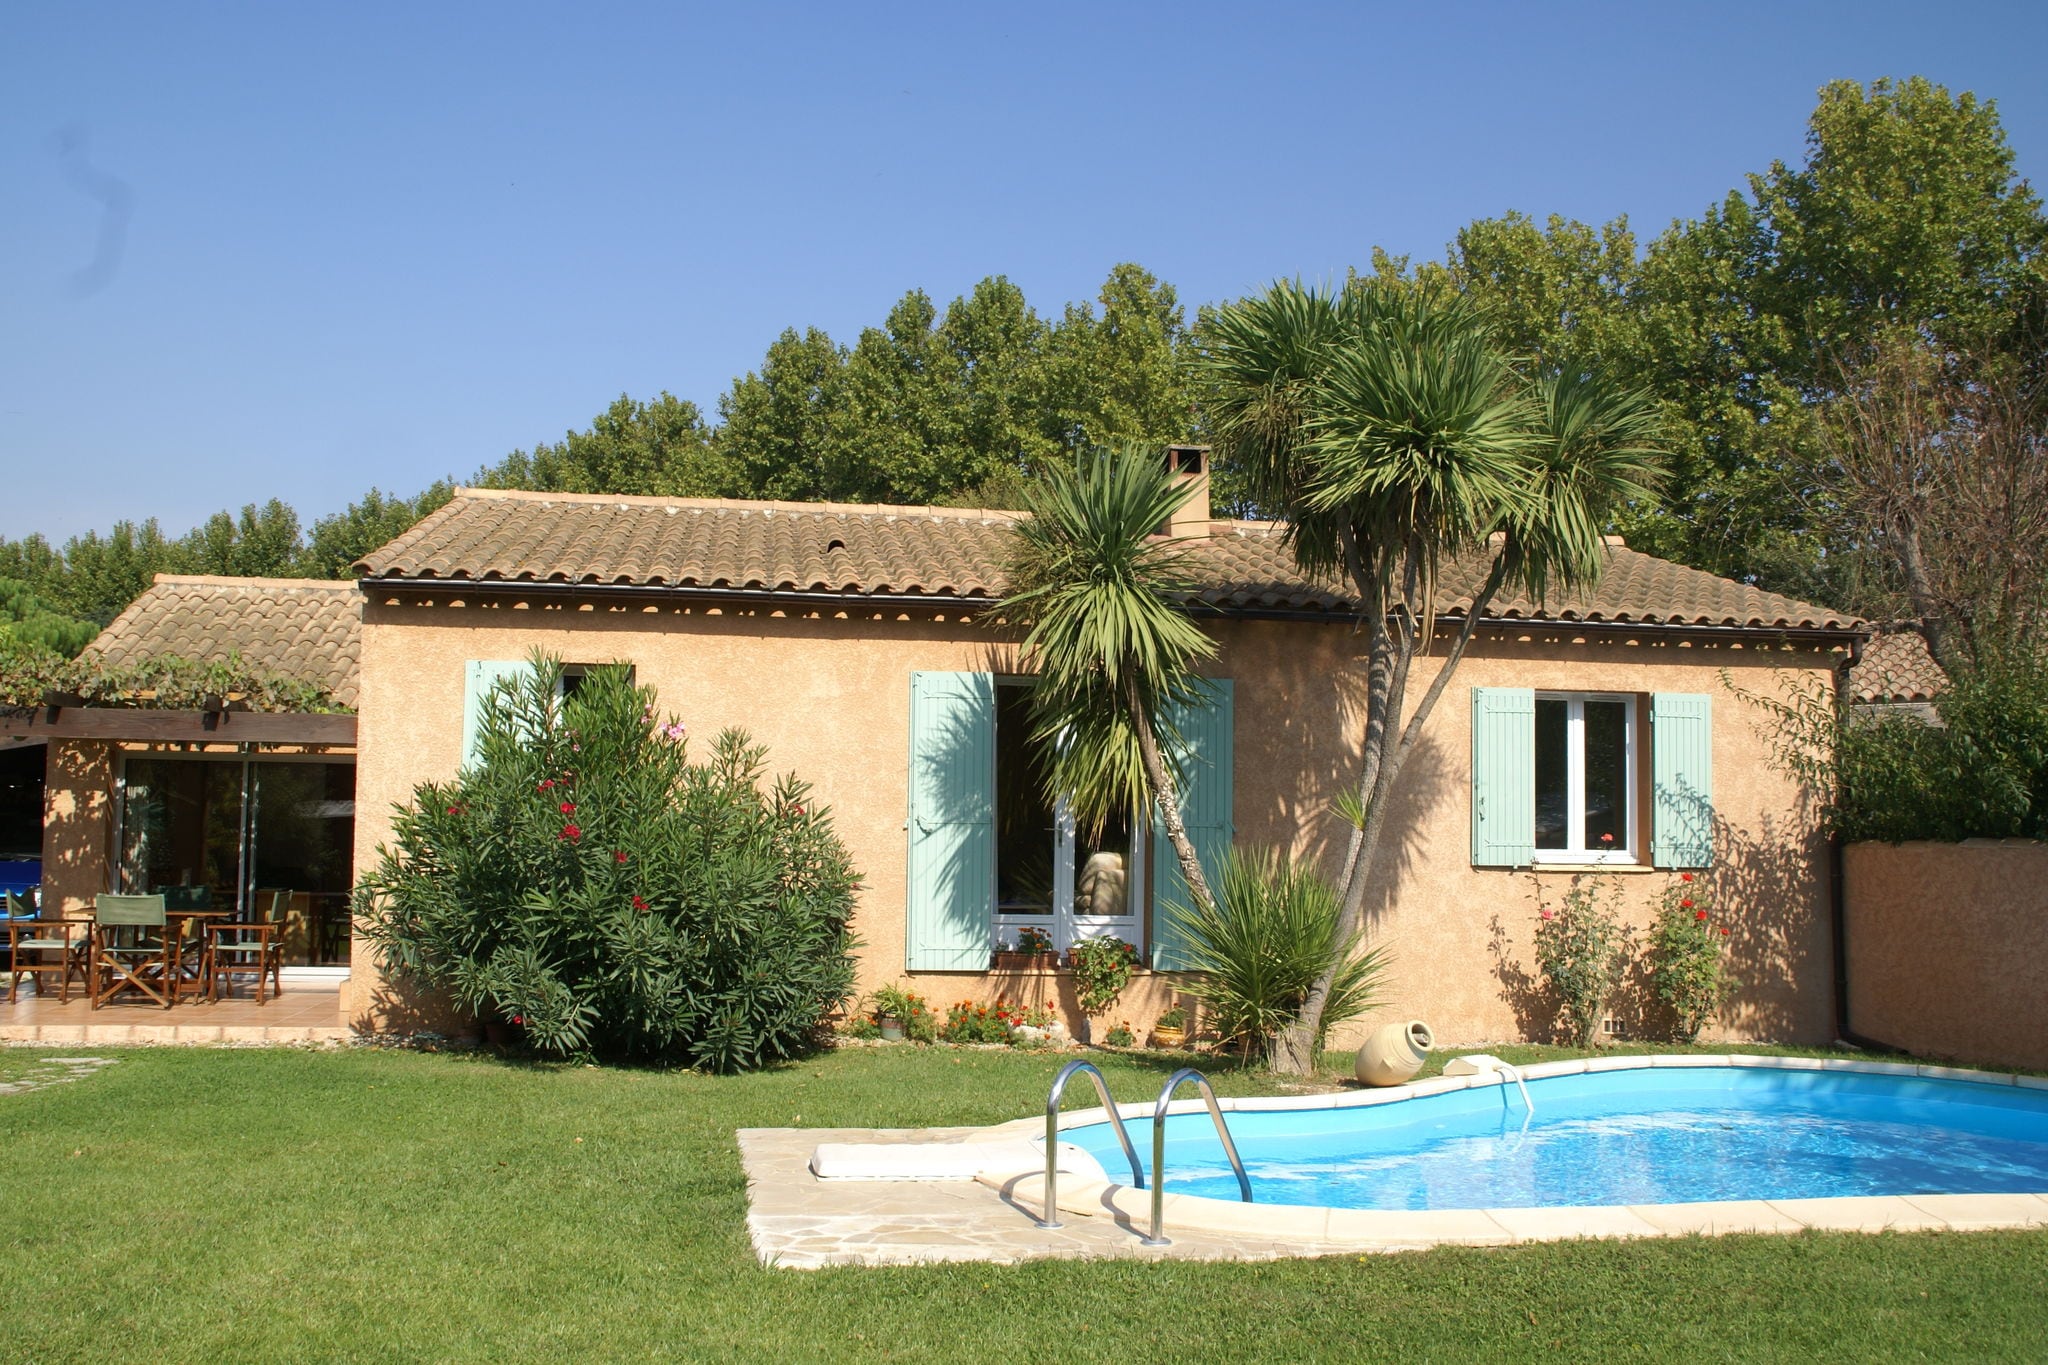 Vrijstaand vakantiehuis in de Provence met een privézwembad